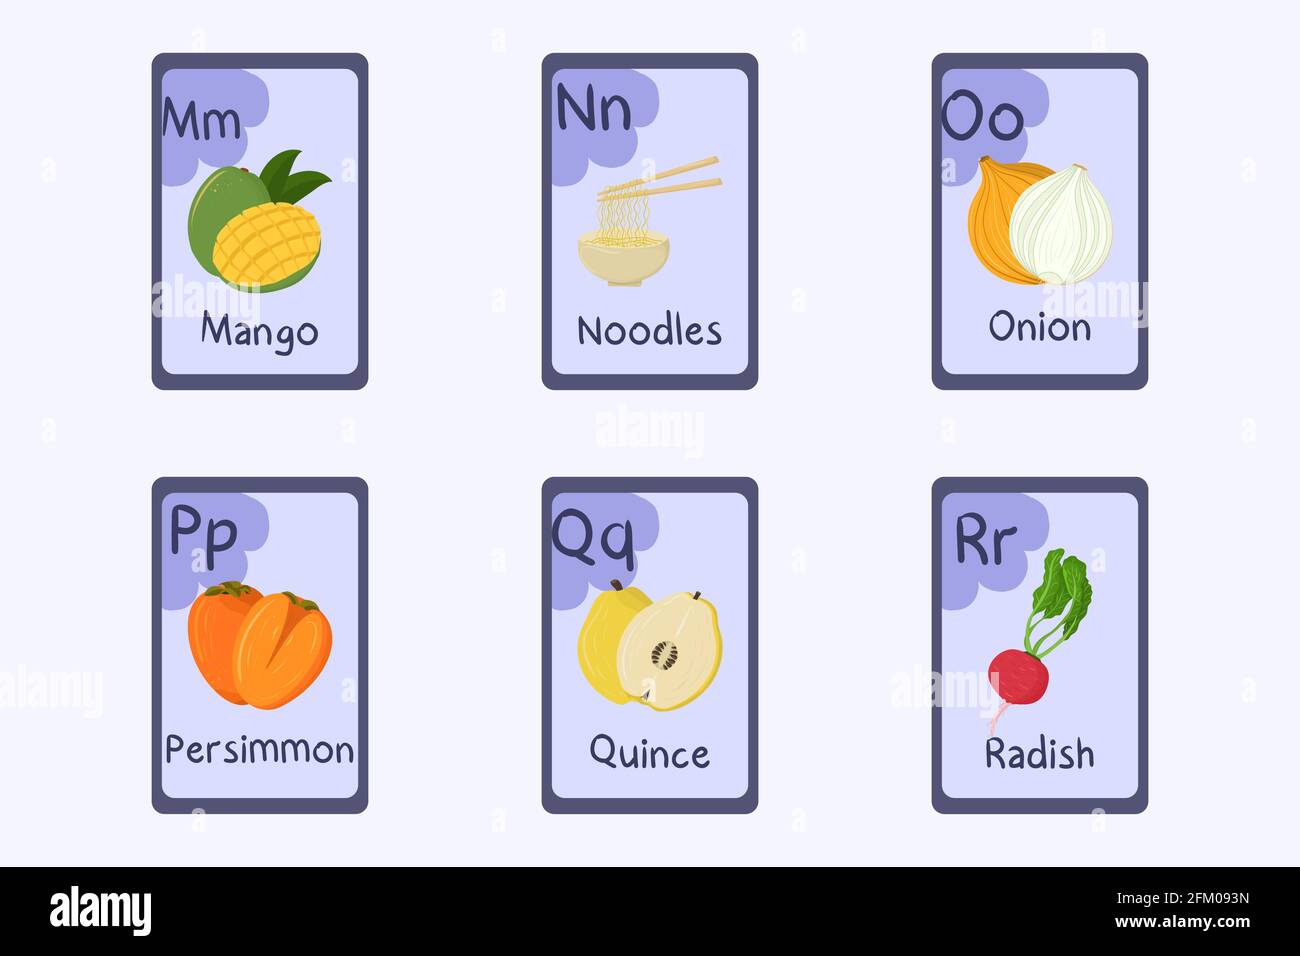 Flashcard alfabetica colorata lettera M, N, o, P, Q, R - mango,  tagliatelle, cipolla, persimmon, mela cotogna, ravanello. Carte a tema  alimentare per insegnare la lettura con cibi, frutta e frutta a